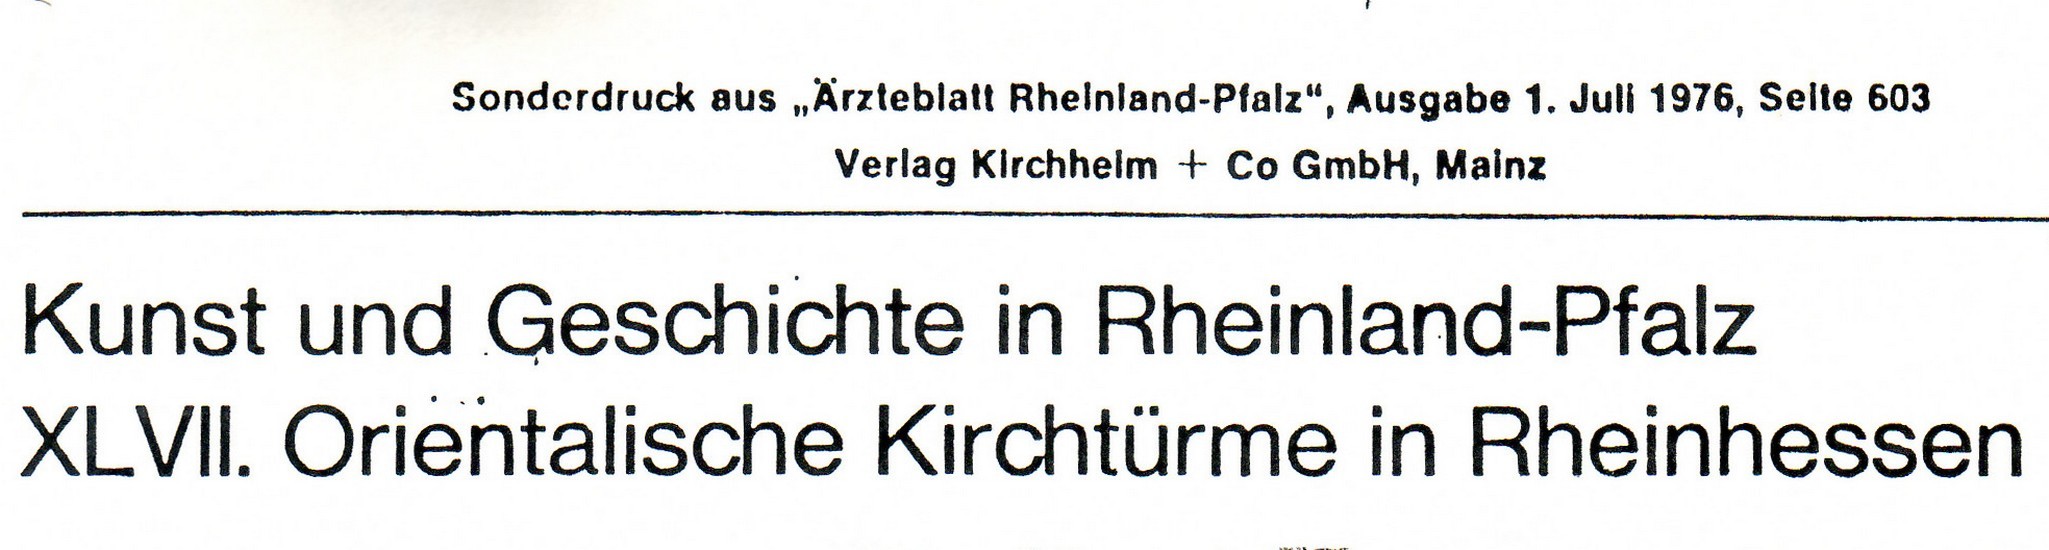 Orientalische Kirchtürme in Rheinhessen (Kulturverein Guntersblum CC BY-NC-SA)